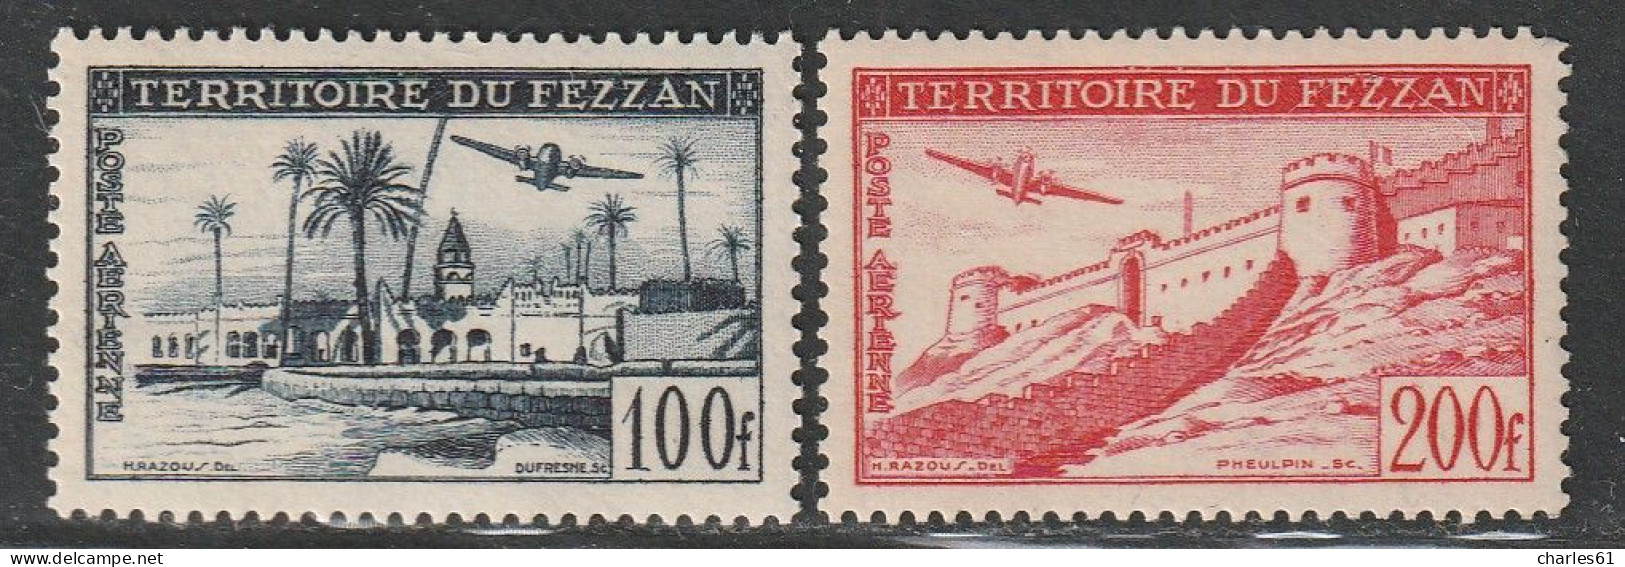 FEZZAN - Poste Aérienne N°6/7 ** (1951) - Nuovi